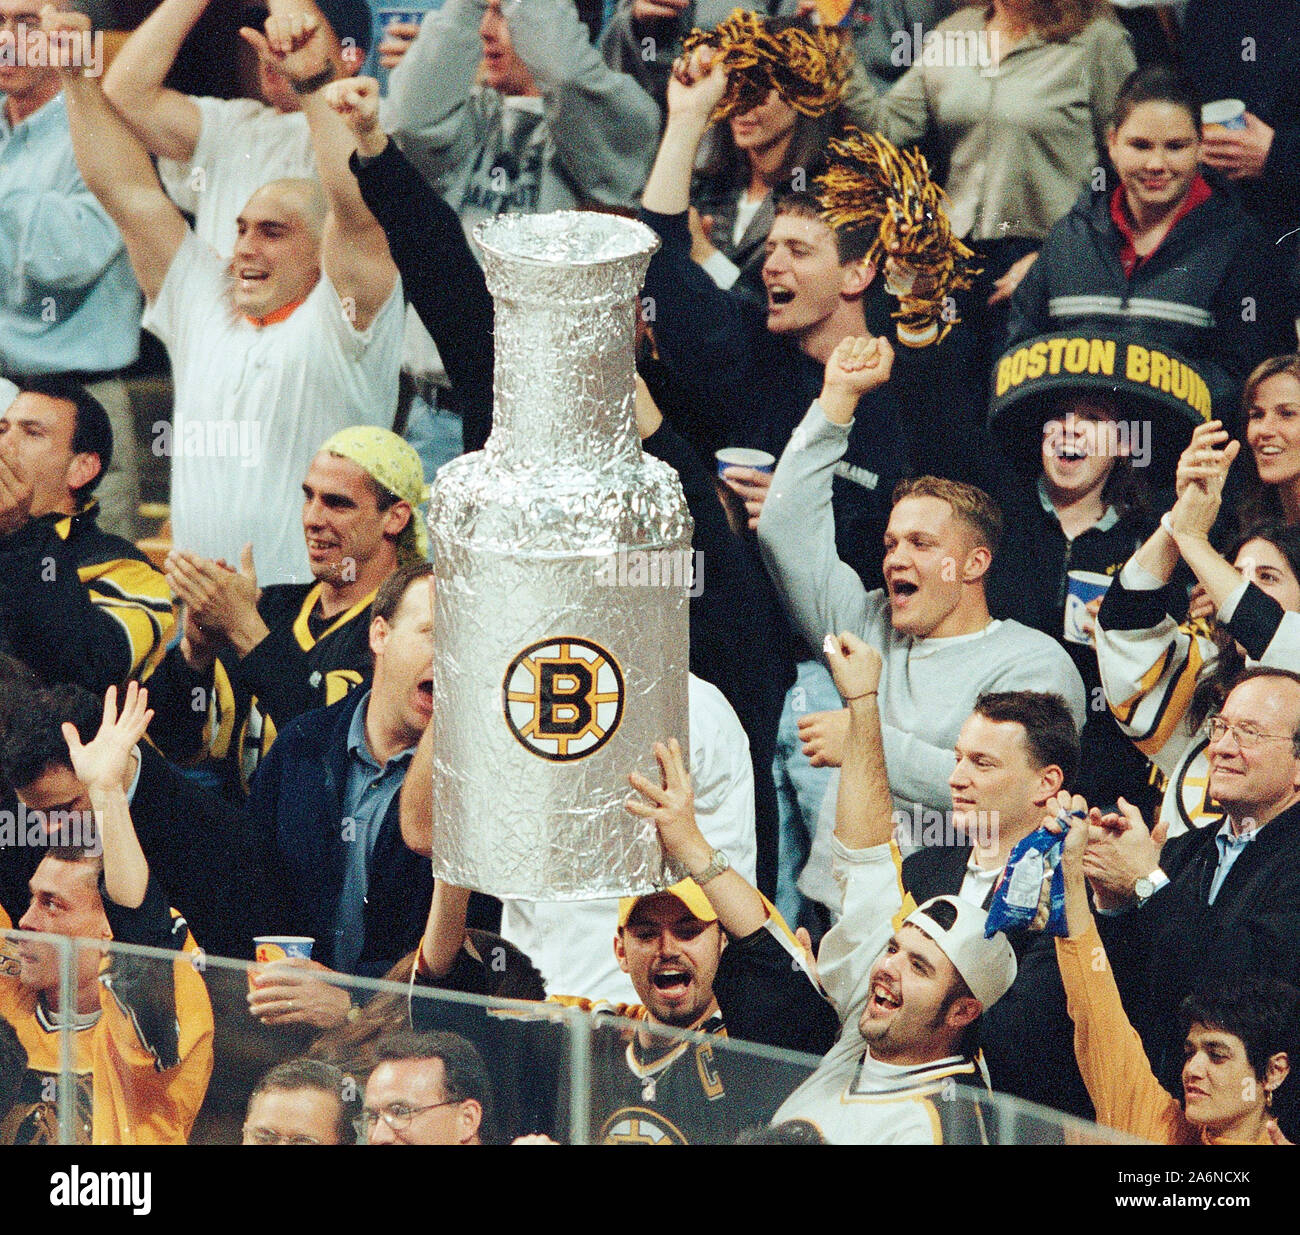 Benutzer/billb/picturesBoston Bruins Fans während eines Spiels zwischen den Bruins und der Buffalo Sabres im Fleet Center in Boston, Ma USA reagieren können 6,1999 Foto von Bill belknap Stockfoto